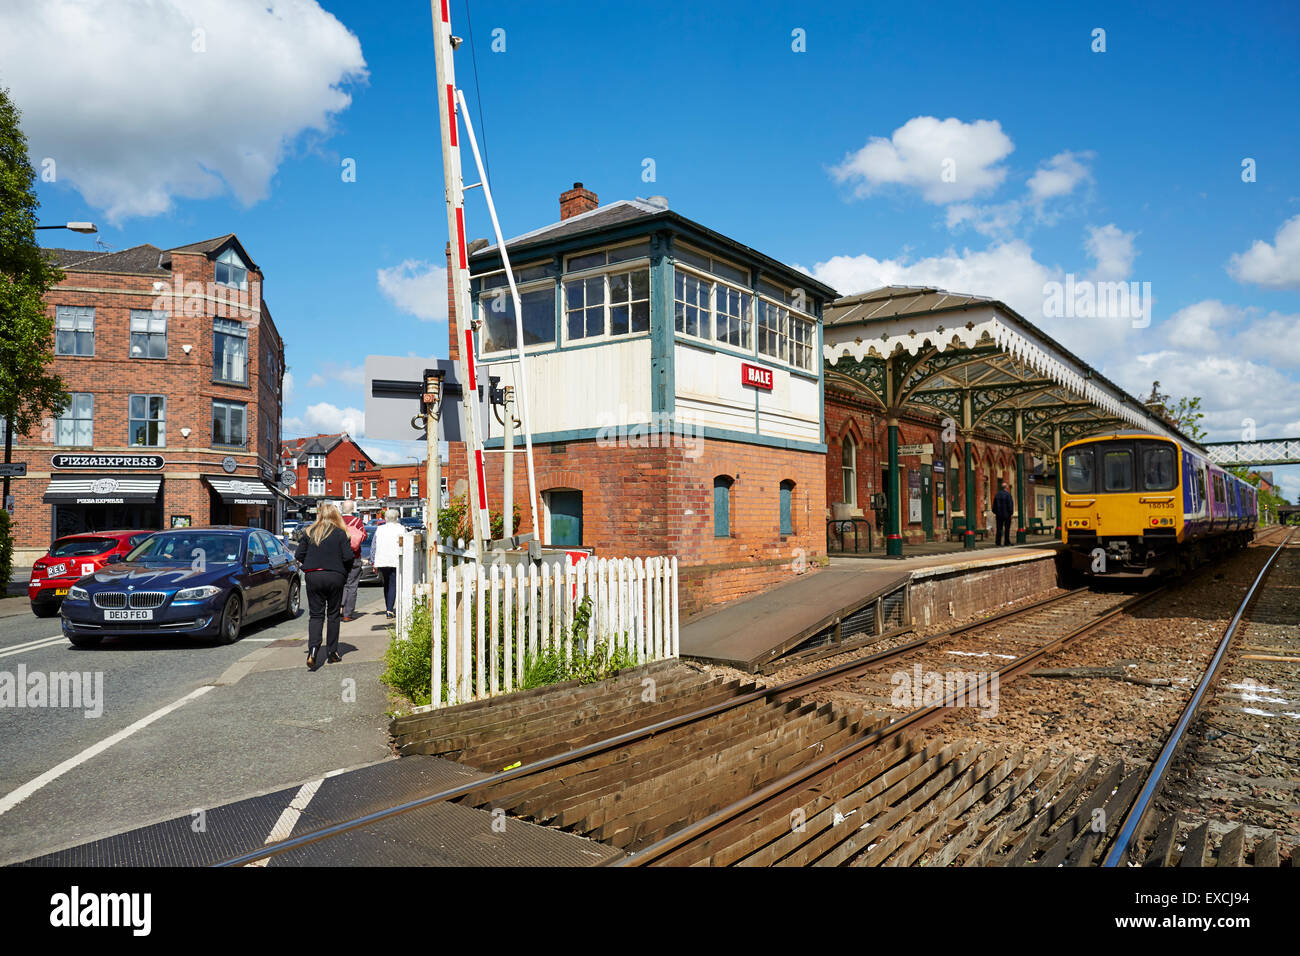 Hale railway station et le passage à niveau, Cheshire UK Hale est un village et électorale dans le quartier District métropolitain de Tr Banque D'Images